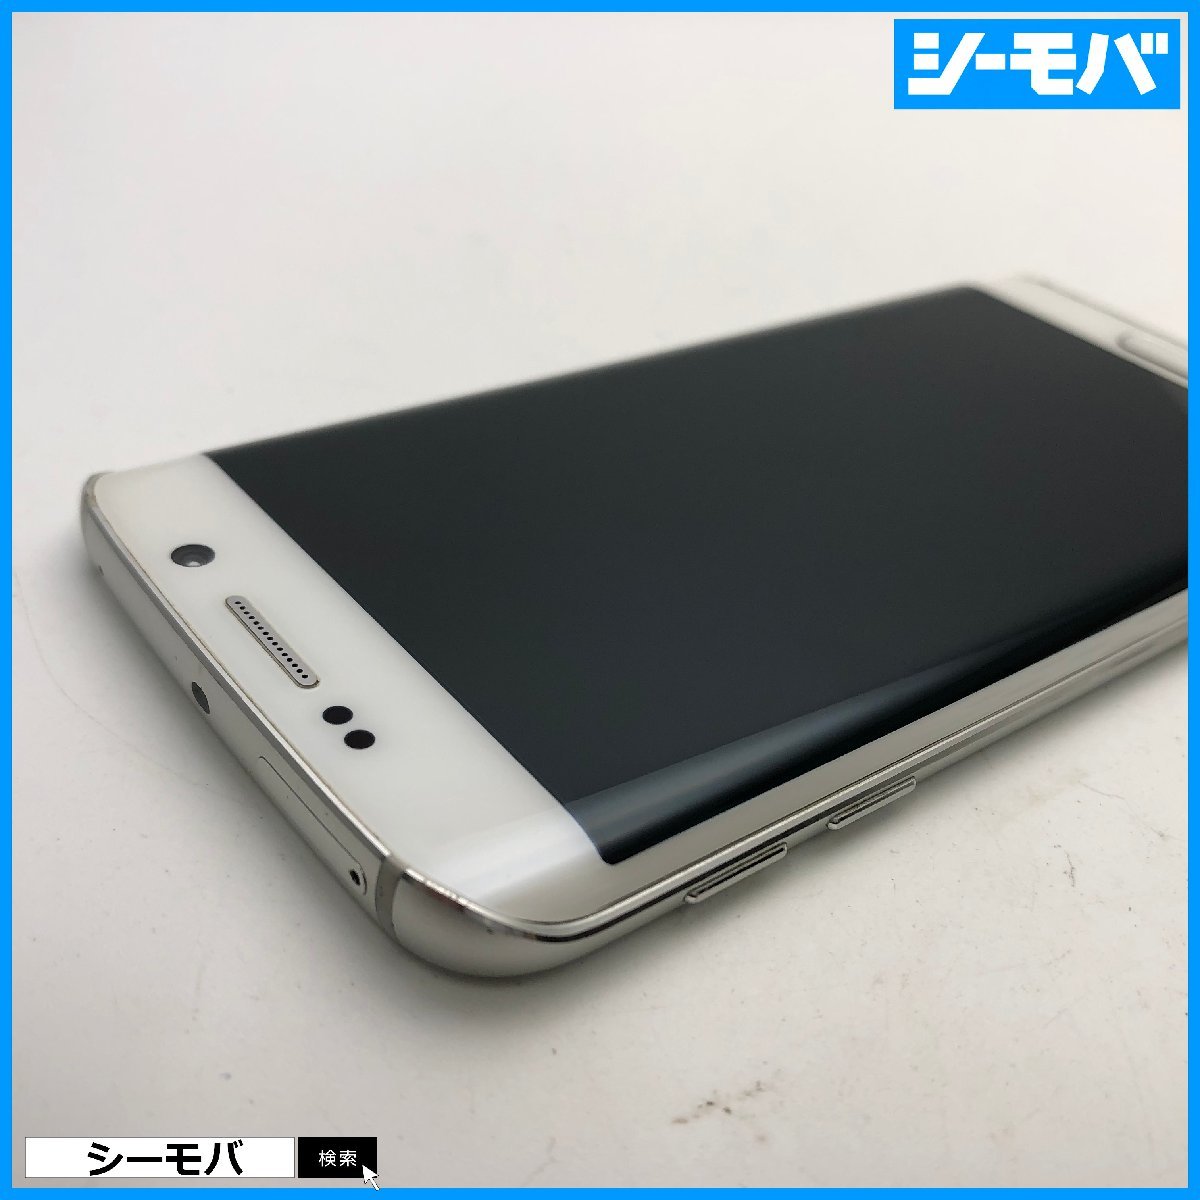 スマホ Galaxy S6 edge 404SC 32GB softbank ホワイト 美品 ソフトバンク android アンドロイド RUUN12934_画像4